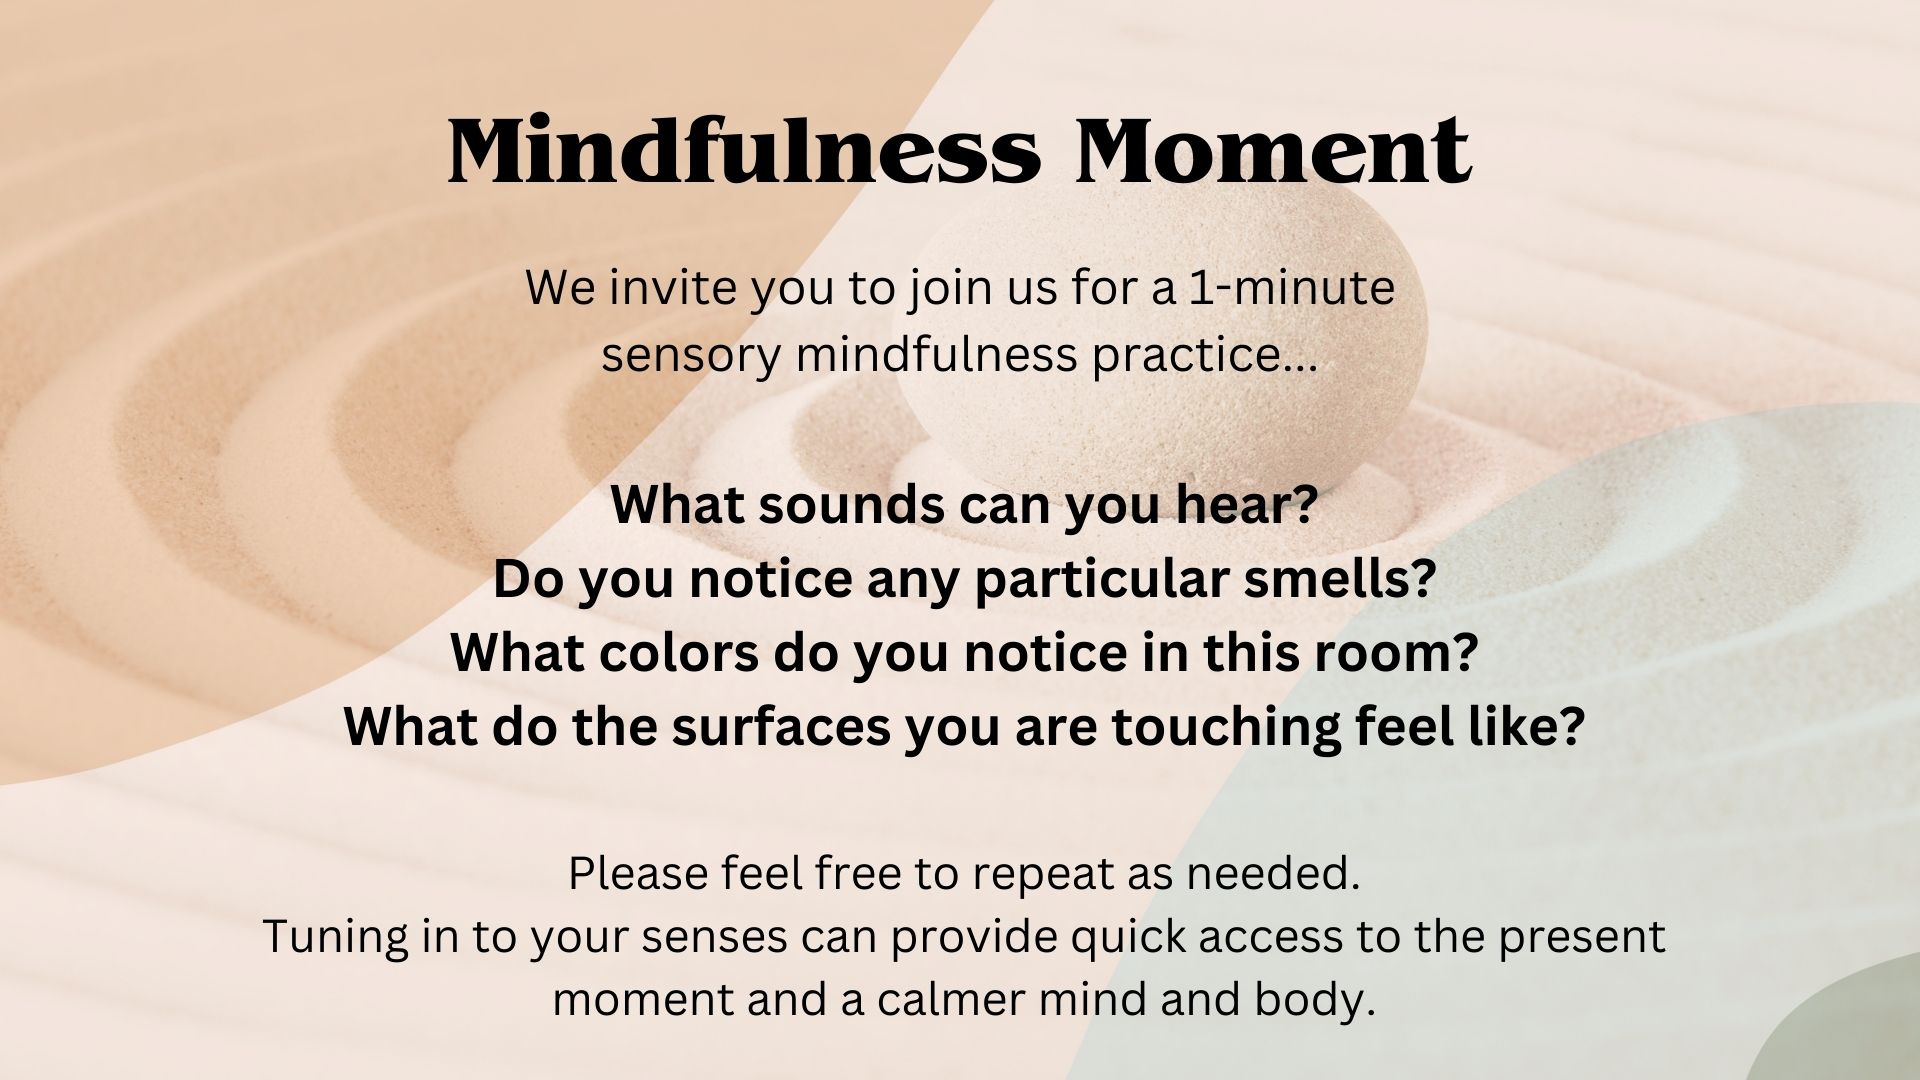 Mindfulness exercise walkthrough using senses